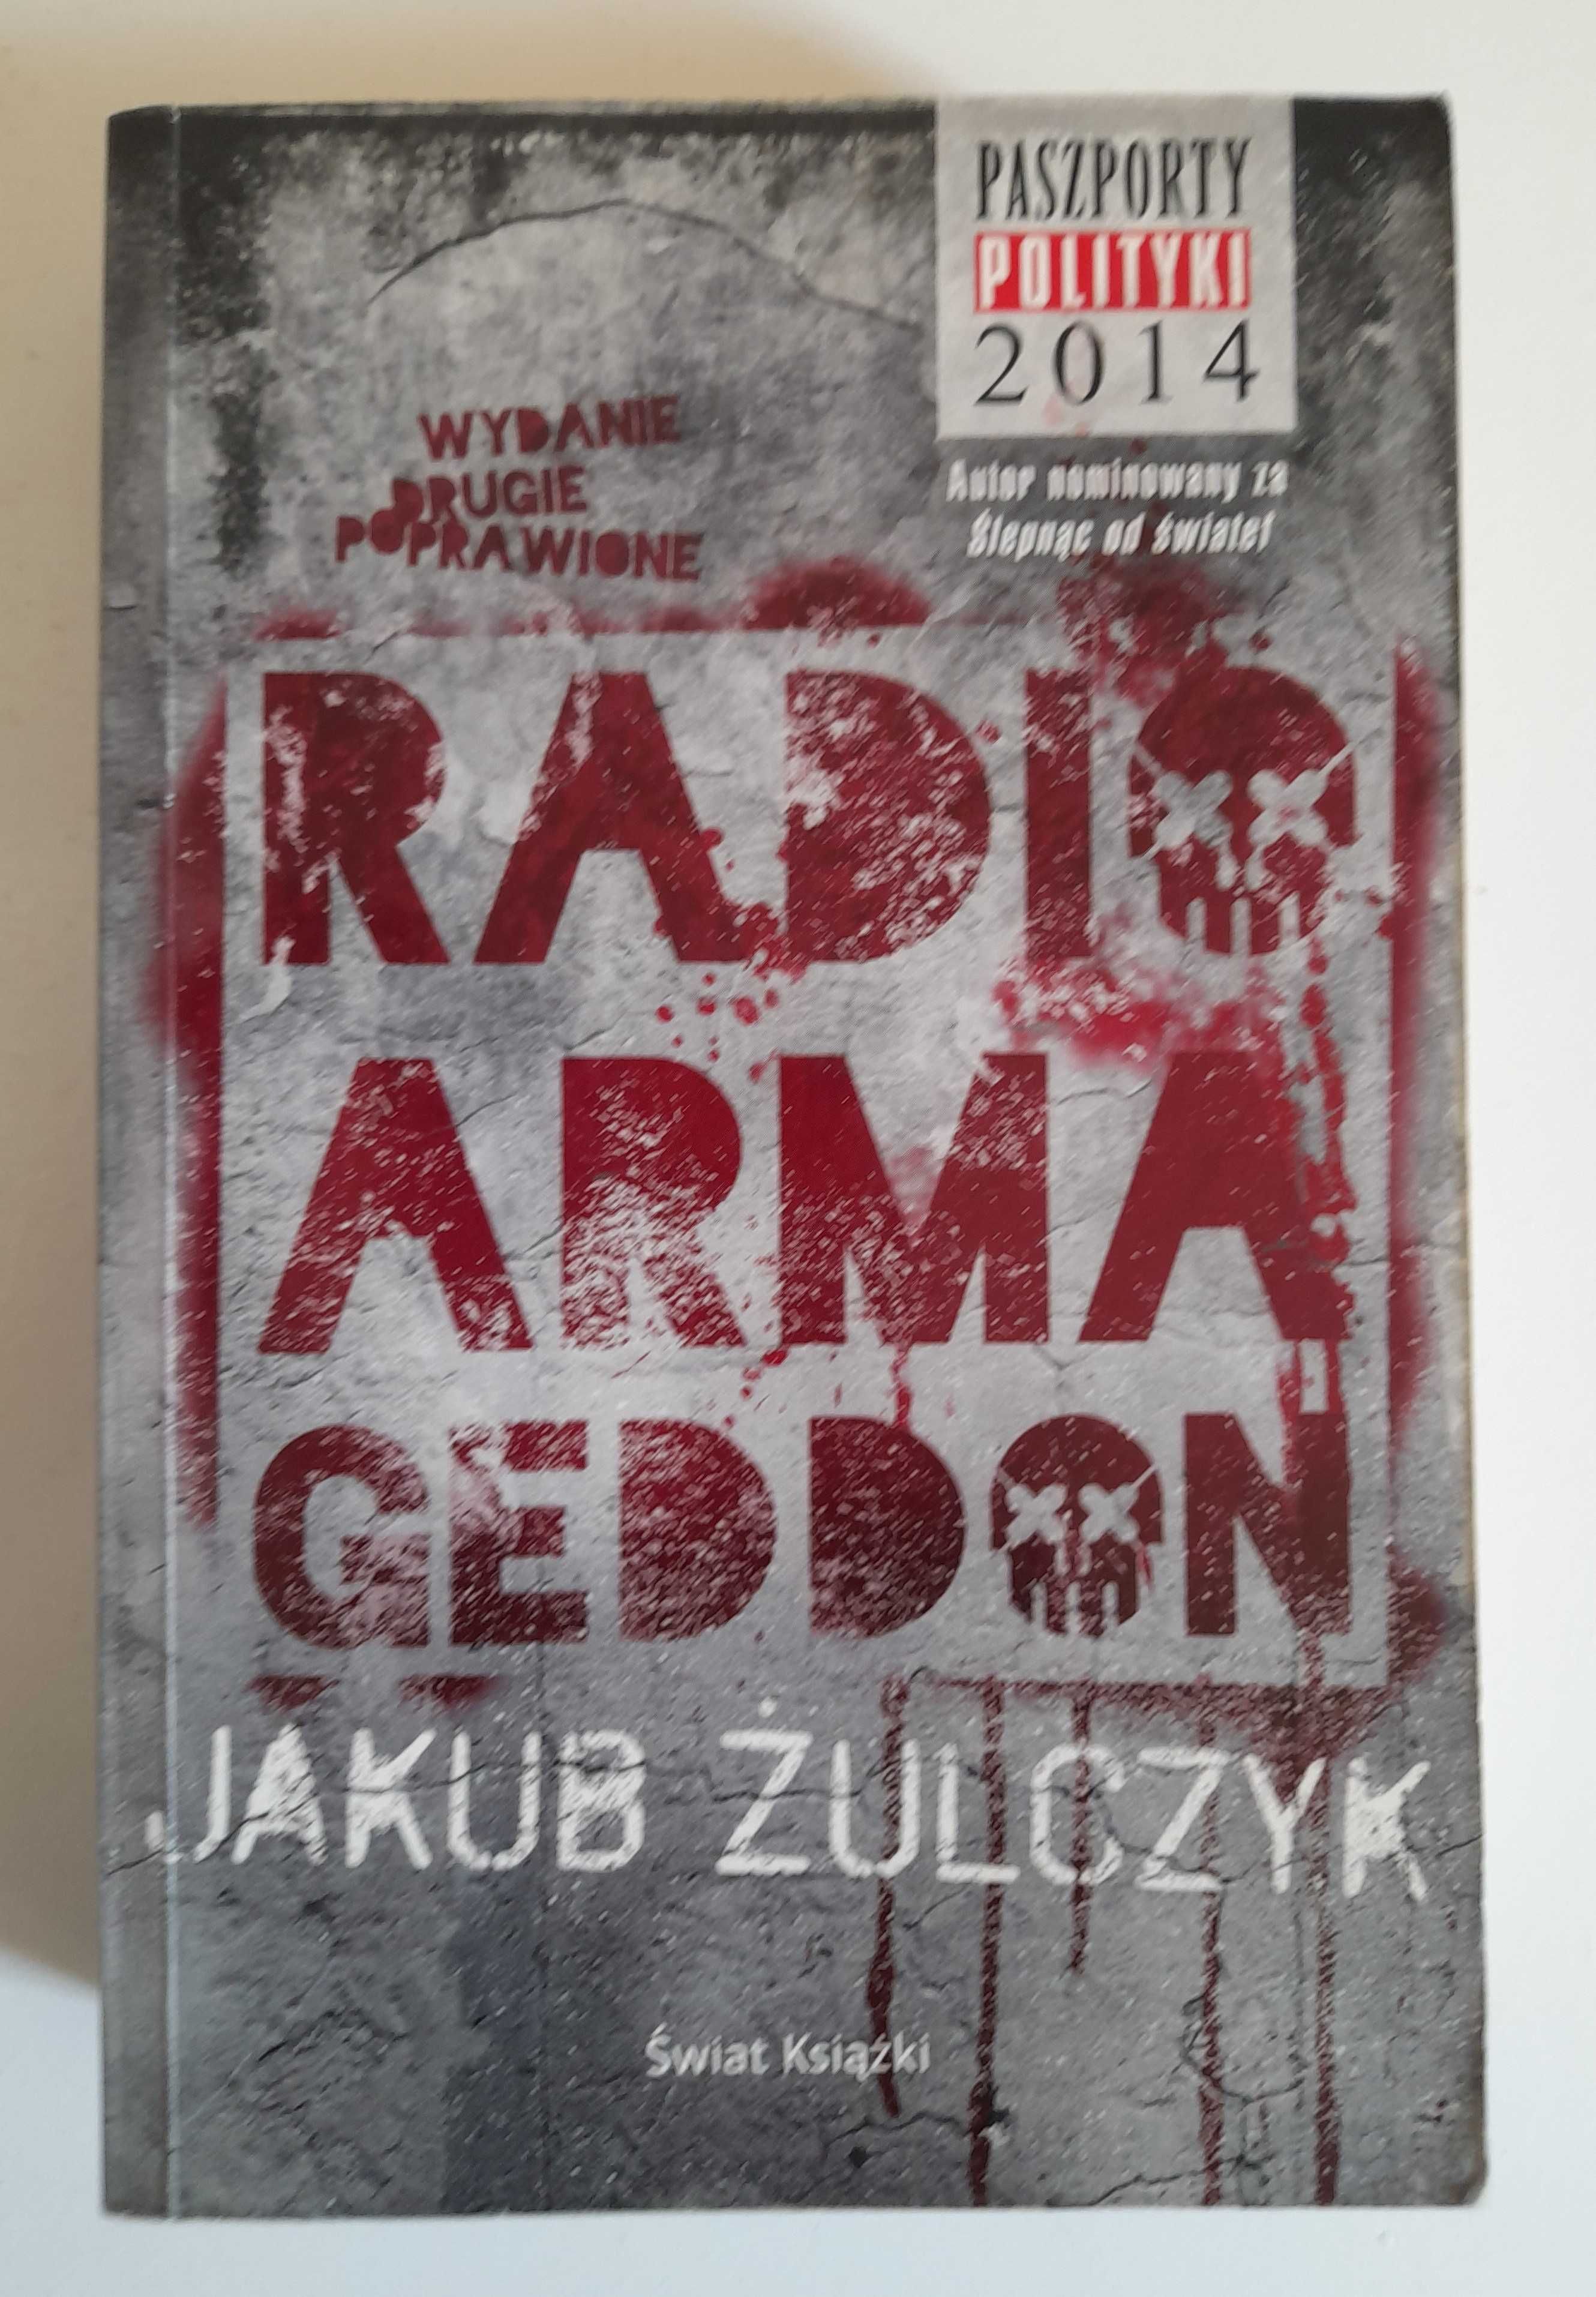 Radio Armageddon - Jakub Żulczyk